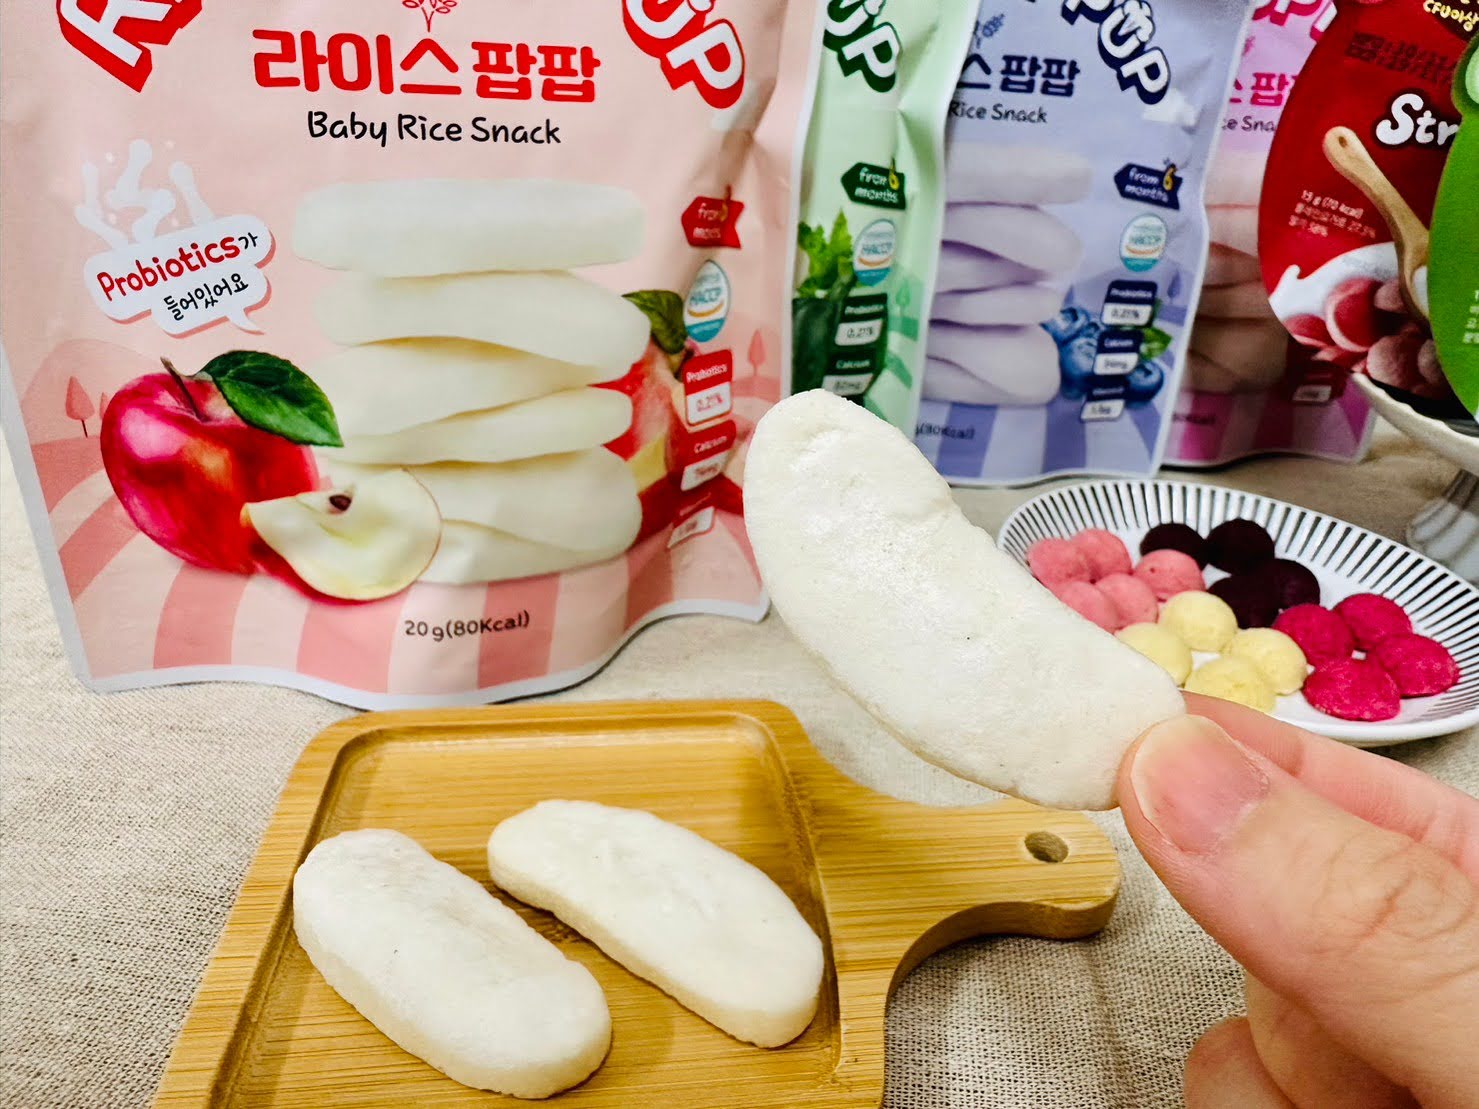 寶寶米餅團購 dcard推薦 哪裡買ptt 韓國AGA-AE益生菌寶寶米餅/優格球